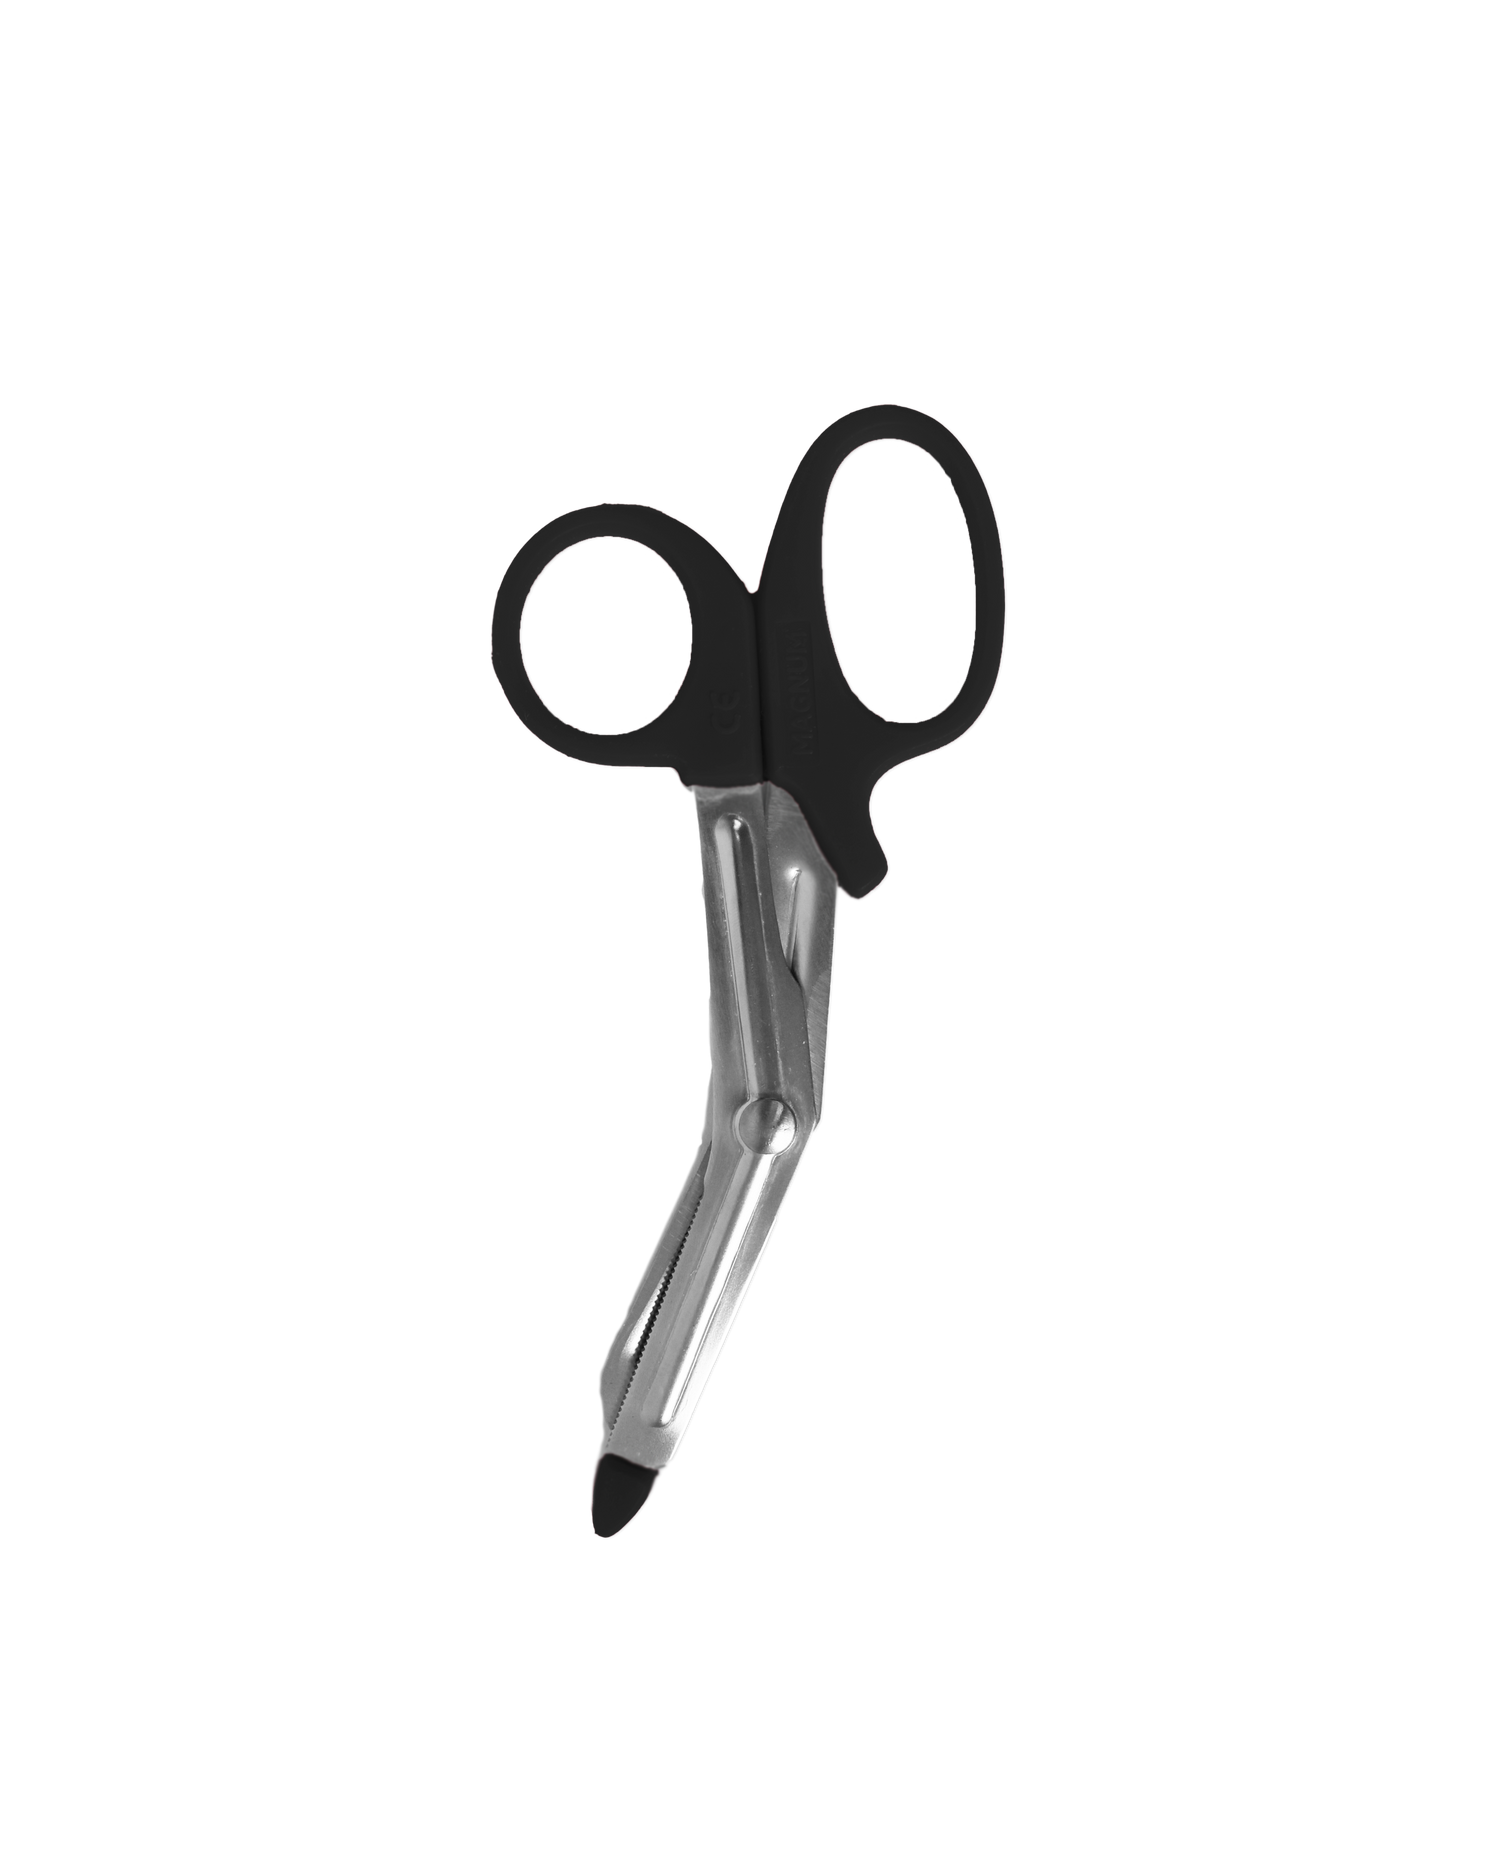 Medline Utility Scissors, Black, 12 EA/BX - Medline MDS10750 BX - Betty  Mills